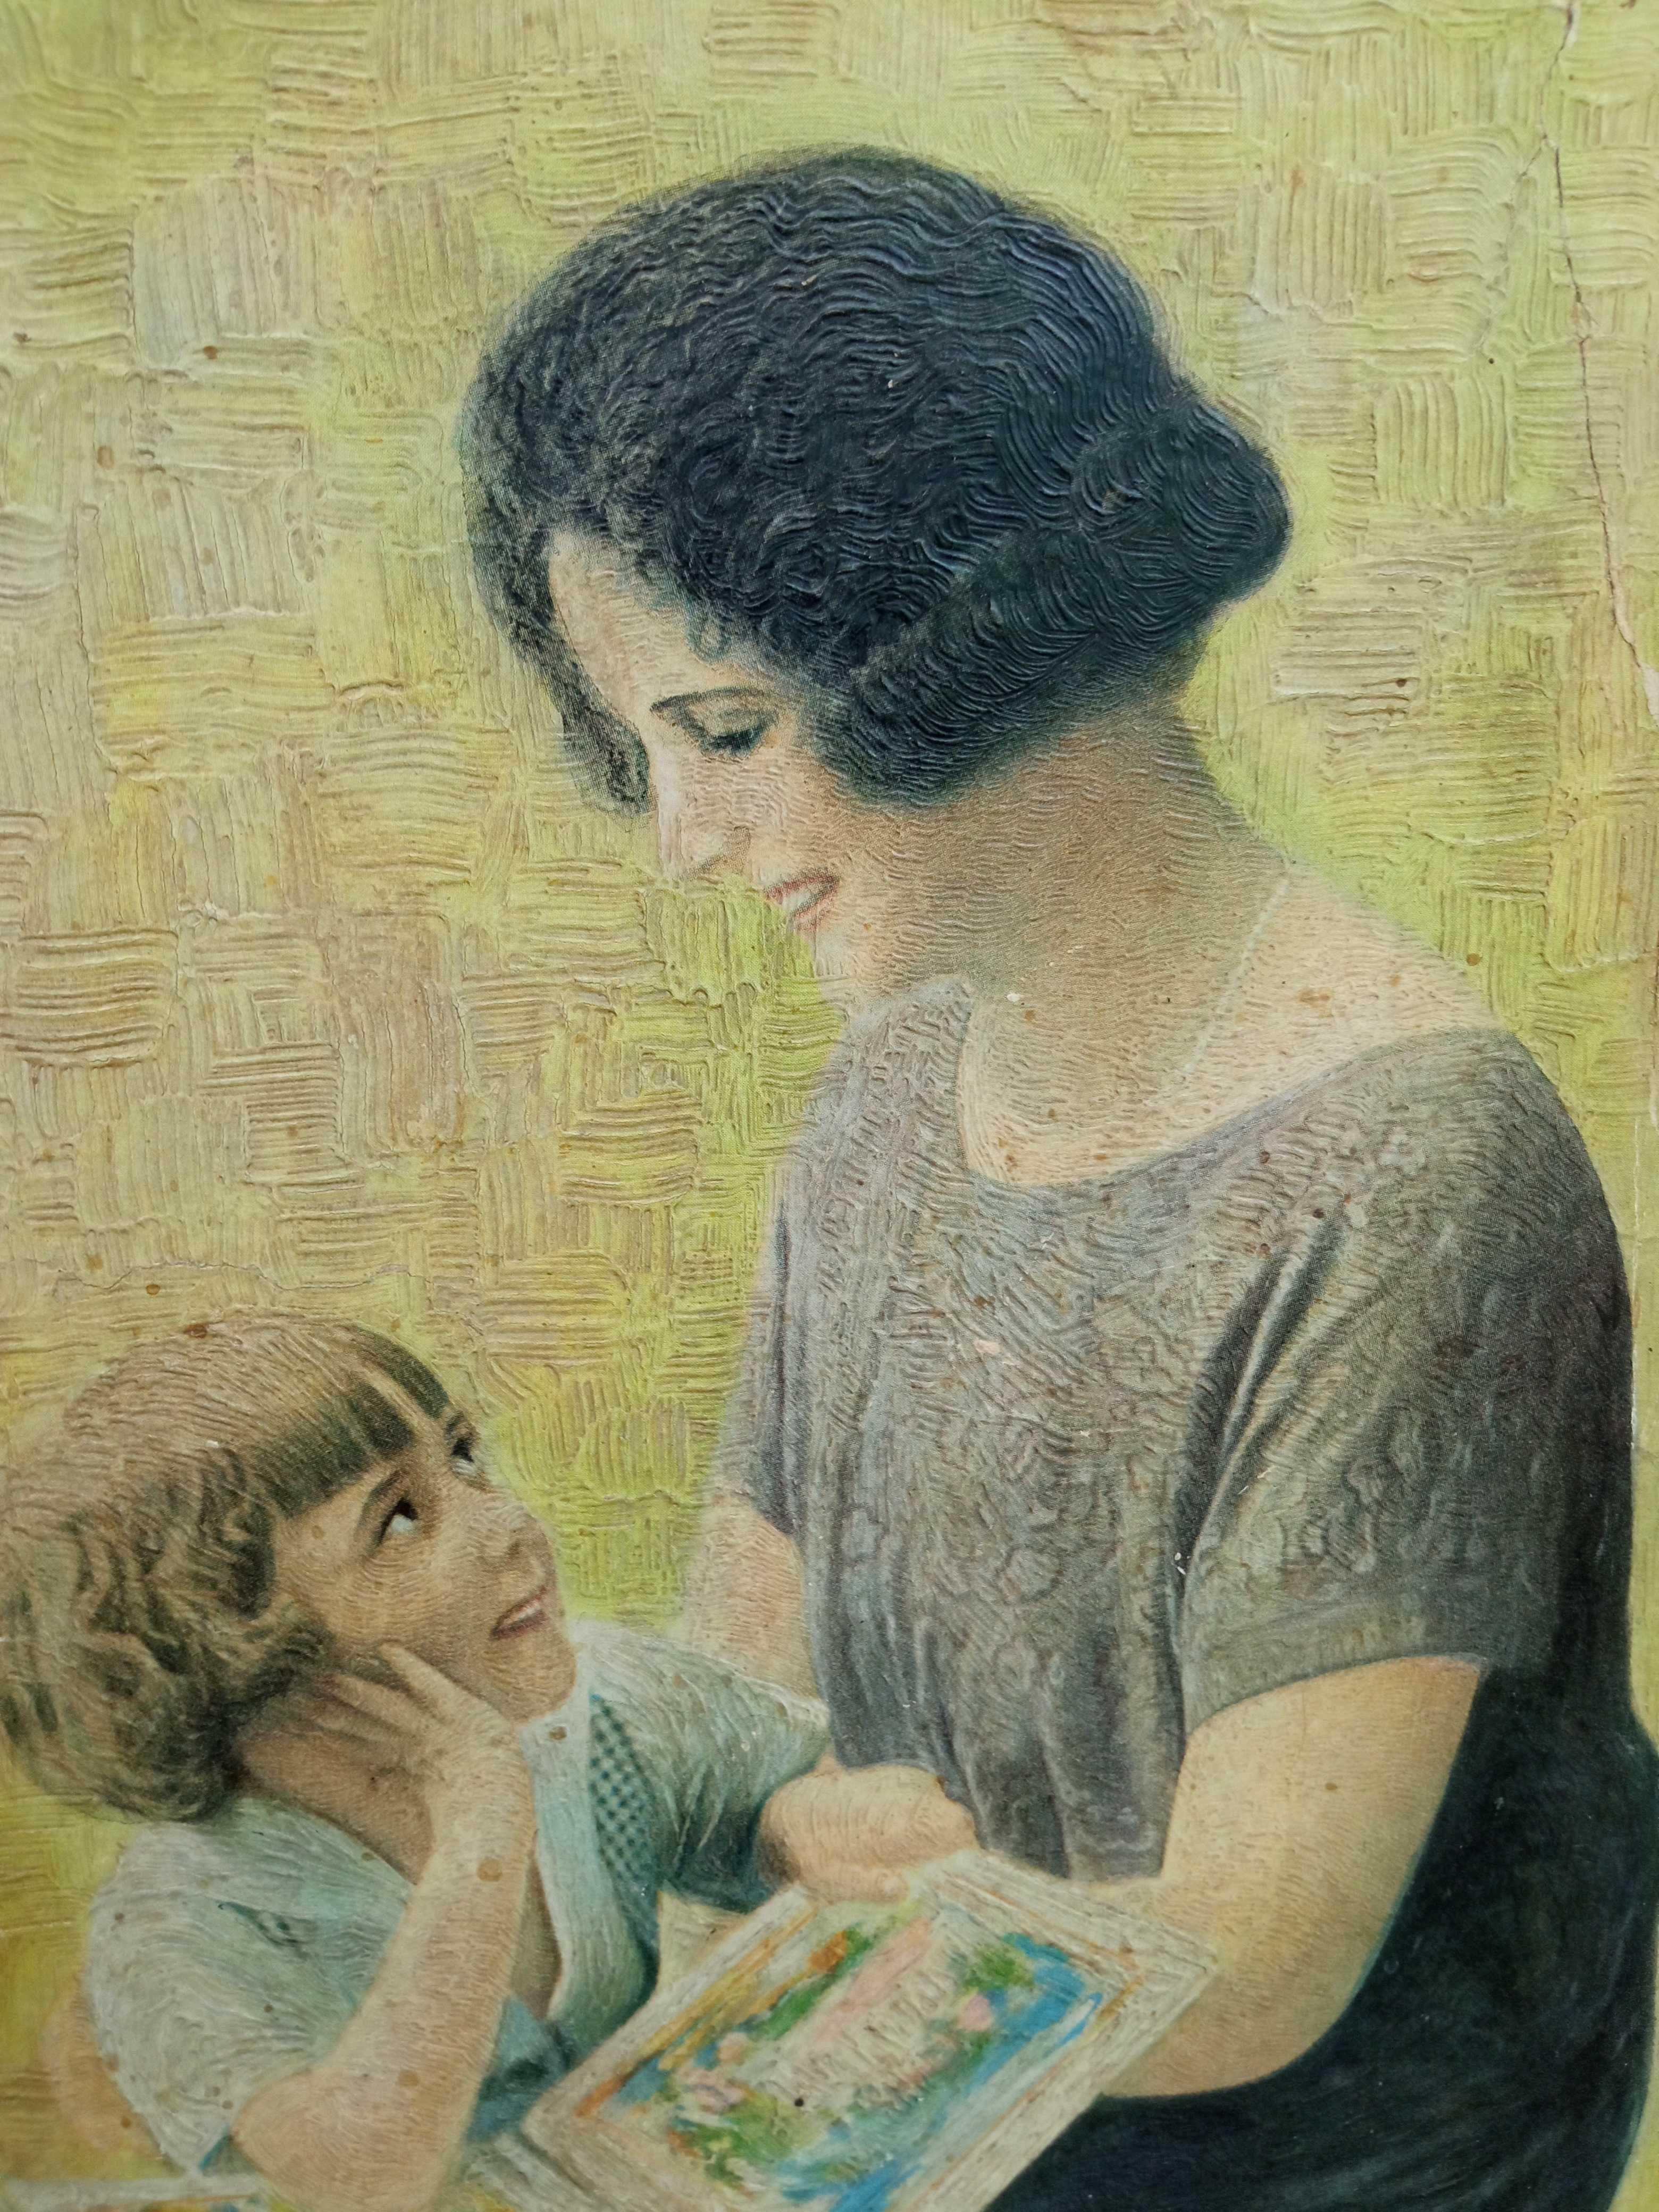 Antyk unikat starocie kolekcja obrazek oleodruk dzień matki dziecka